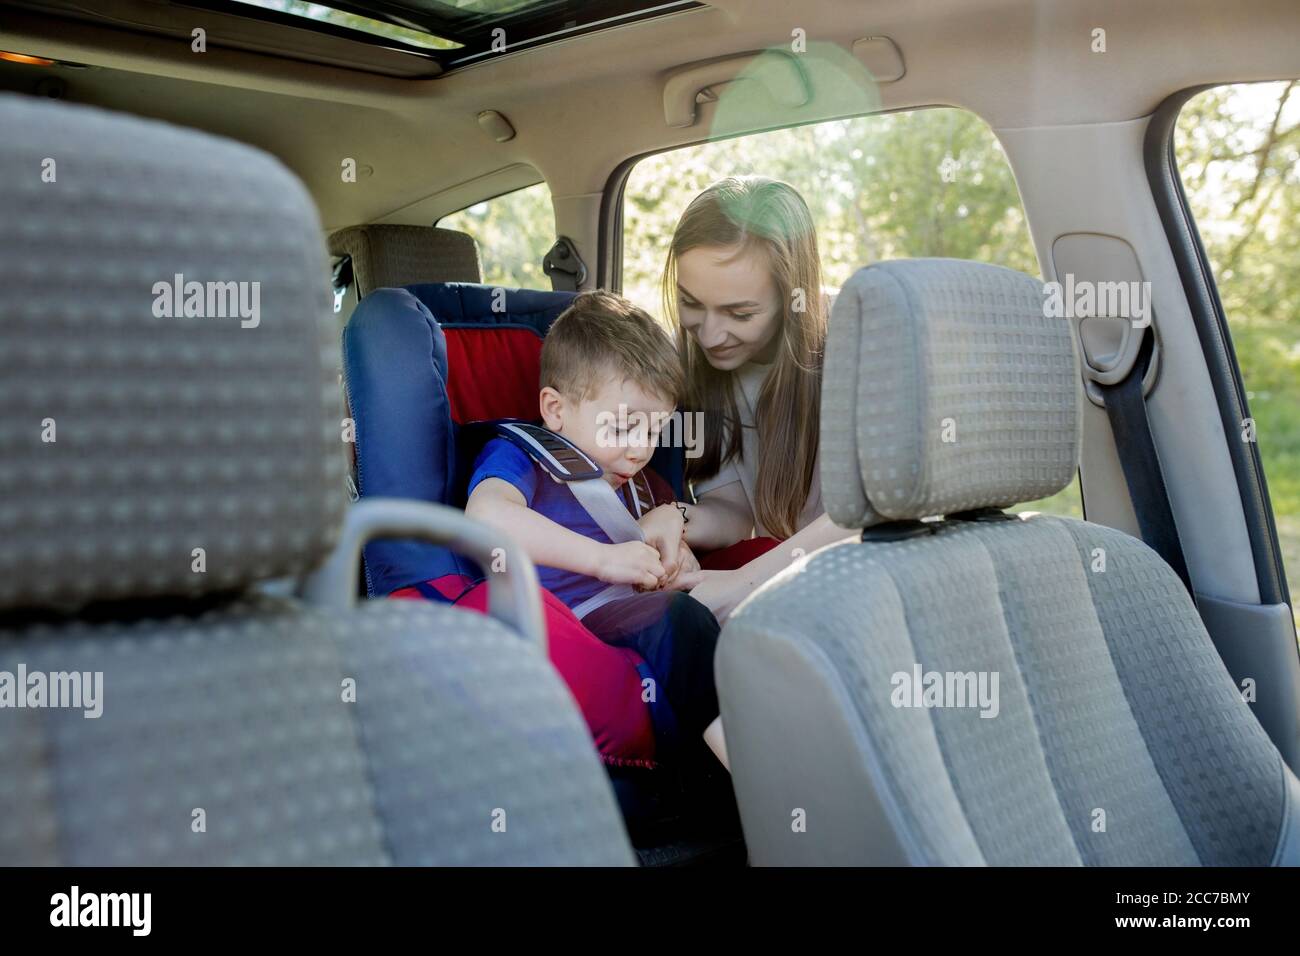 Junge Sitzt Im Kindersitz In Einem Auto Stockfotos und bilder